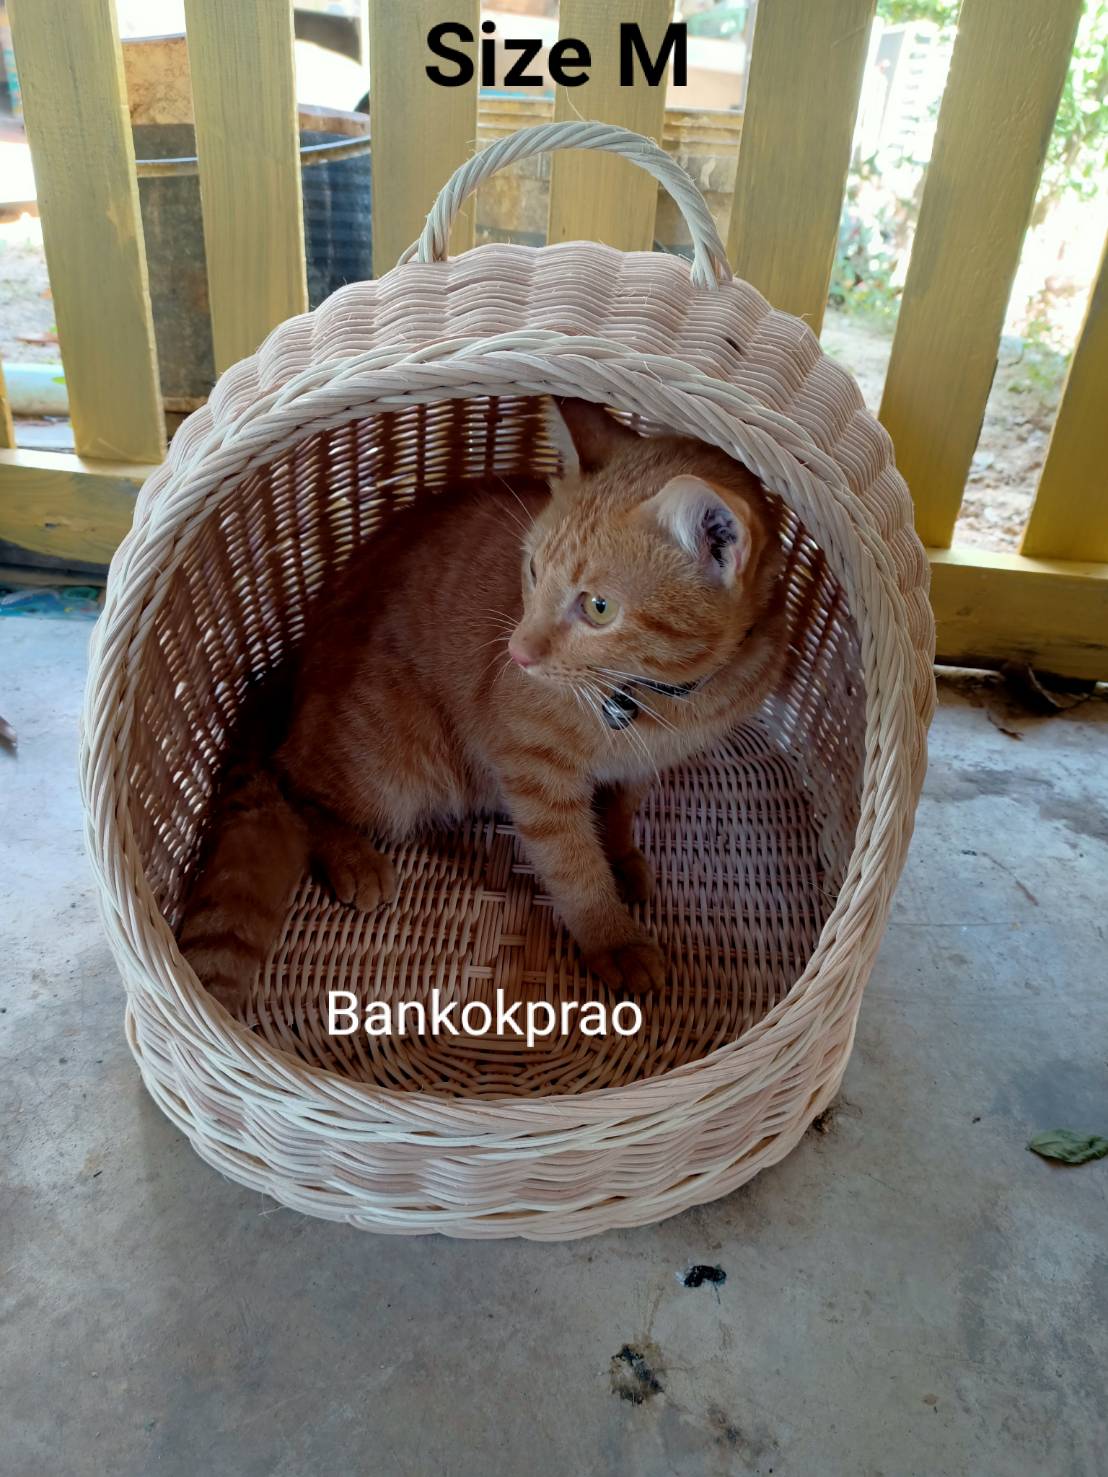 คอนโดแมว มินิมอล Minimal จักสานไม้หวายแท้วัสดุธรรมชาติ 100% ทรงโดม ขนาด 14x18x15 นิ้ว (สีเบจ/ธรรมชาติ) ที่นอนสัตว์เลี้ยง ตะกร้านอนแมว ที่นอนแมว